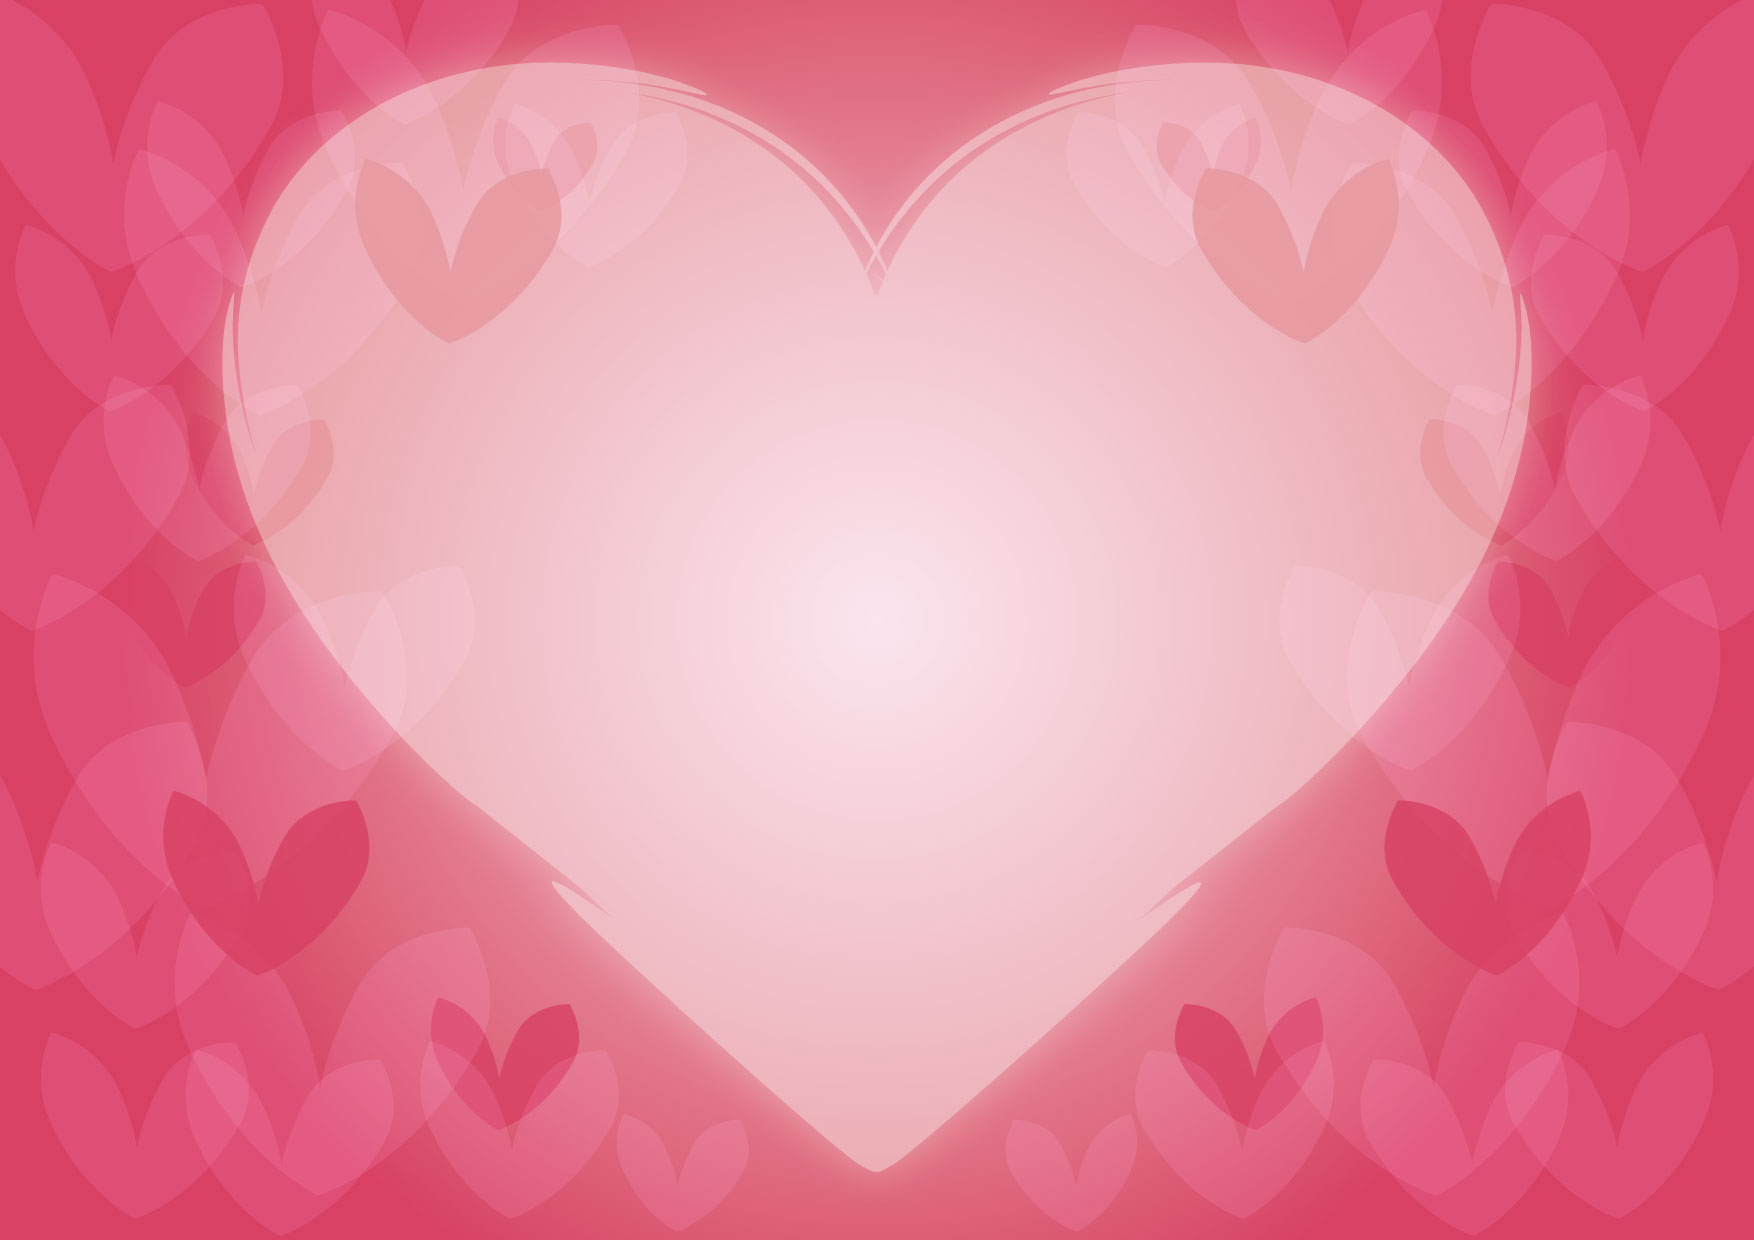 可愛いイラスト無料 バレンタイン ハート 背景 ピンク Free Illustration Valentine Heart Background Pink 公式 イラストダウンロード